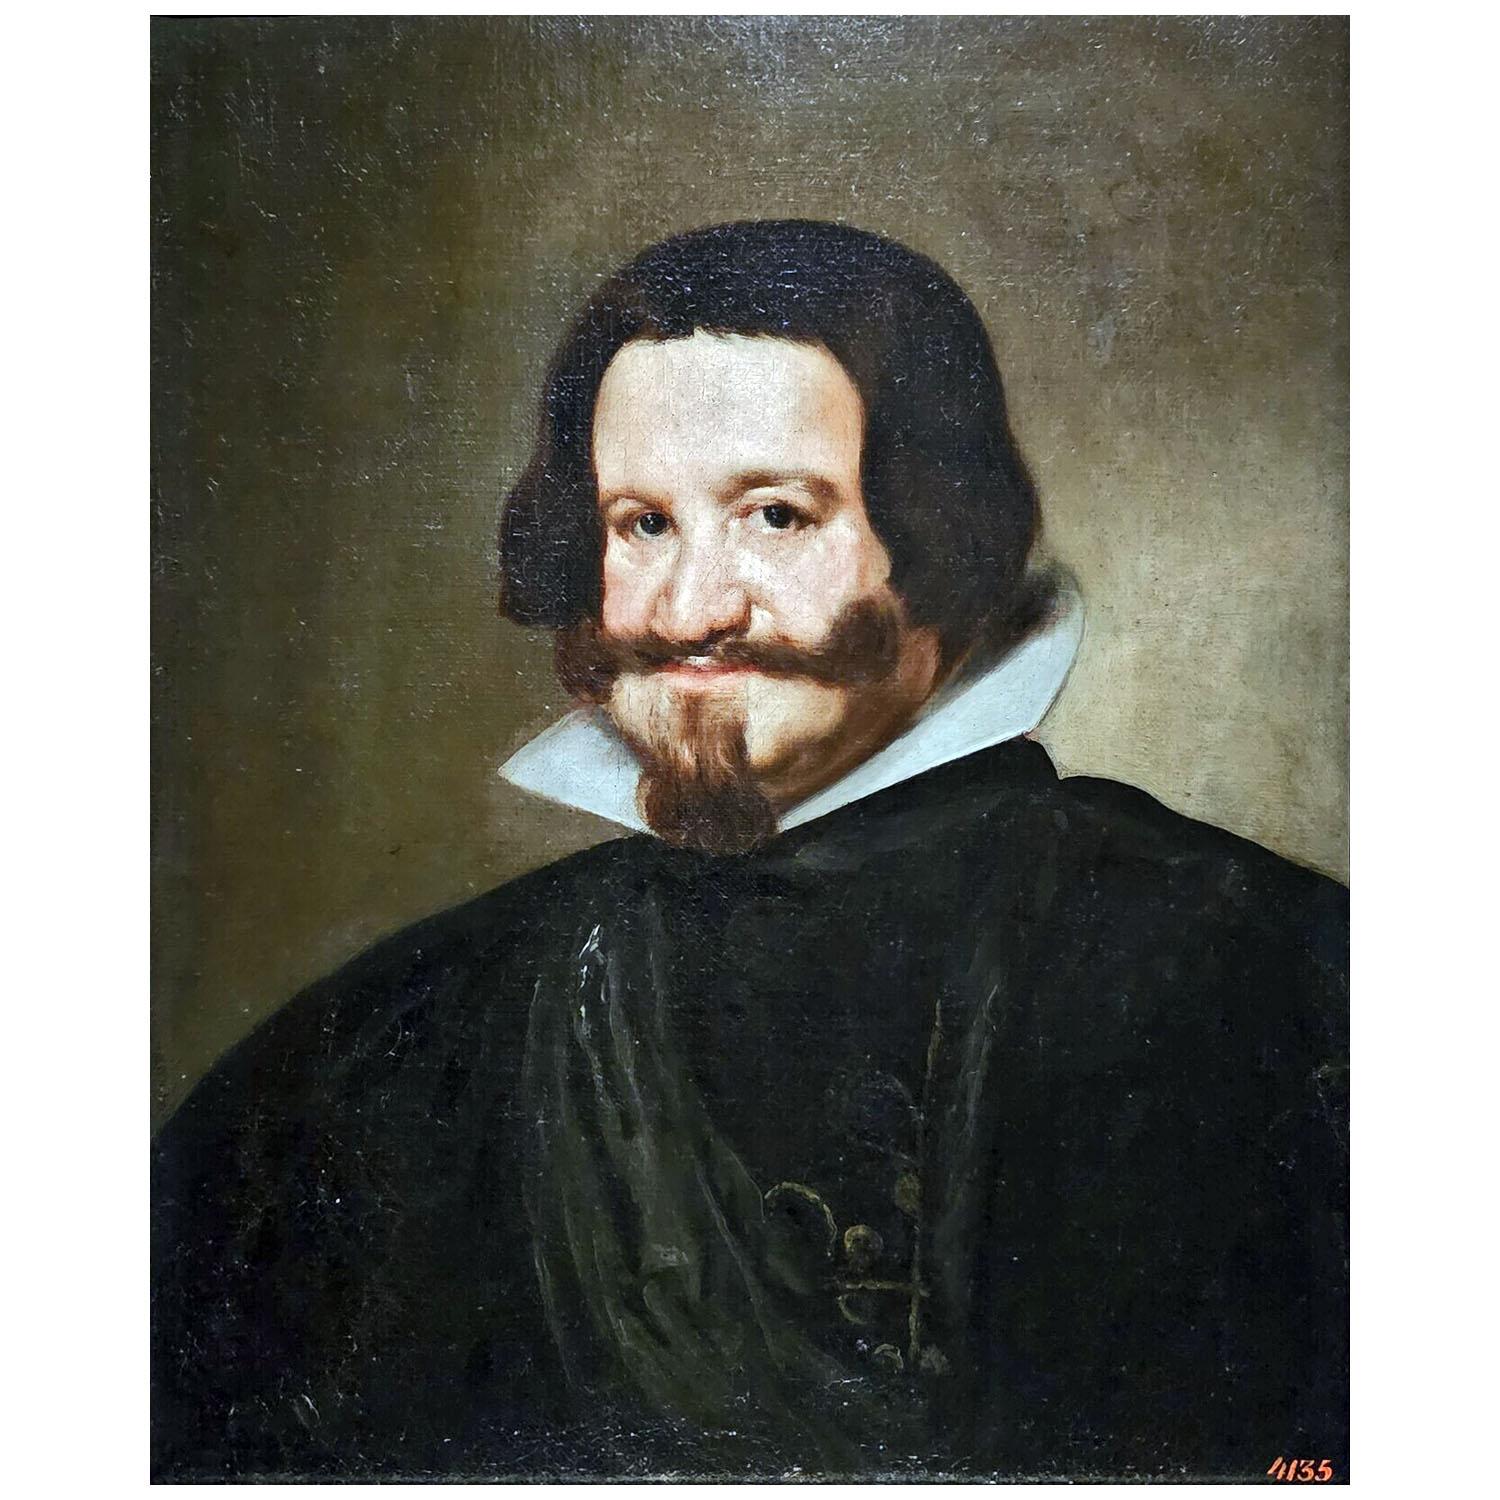 Диего Родригес Де Сильва-и-Веласкес. Герцог де Оливарес. 1638. Эрмитаж